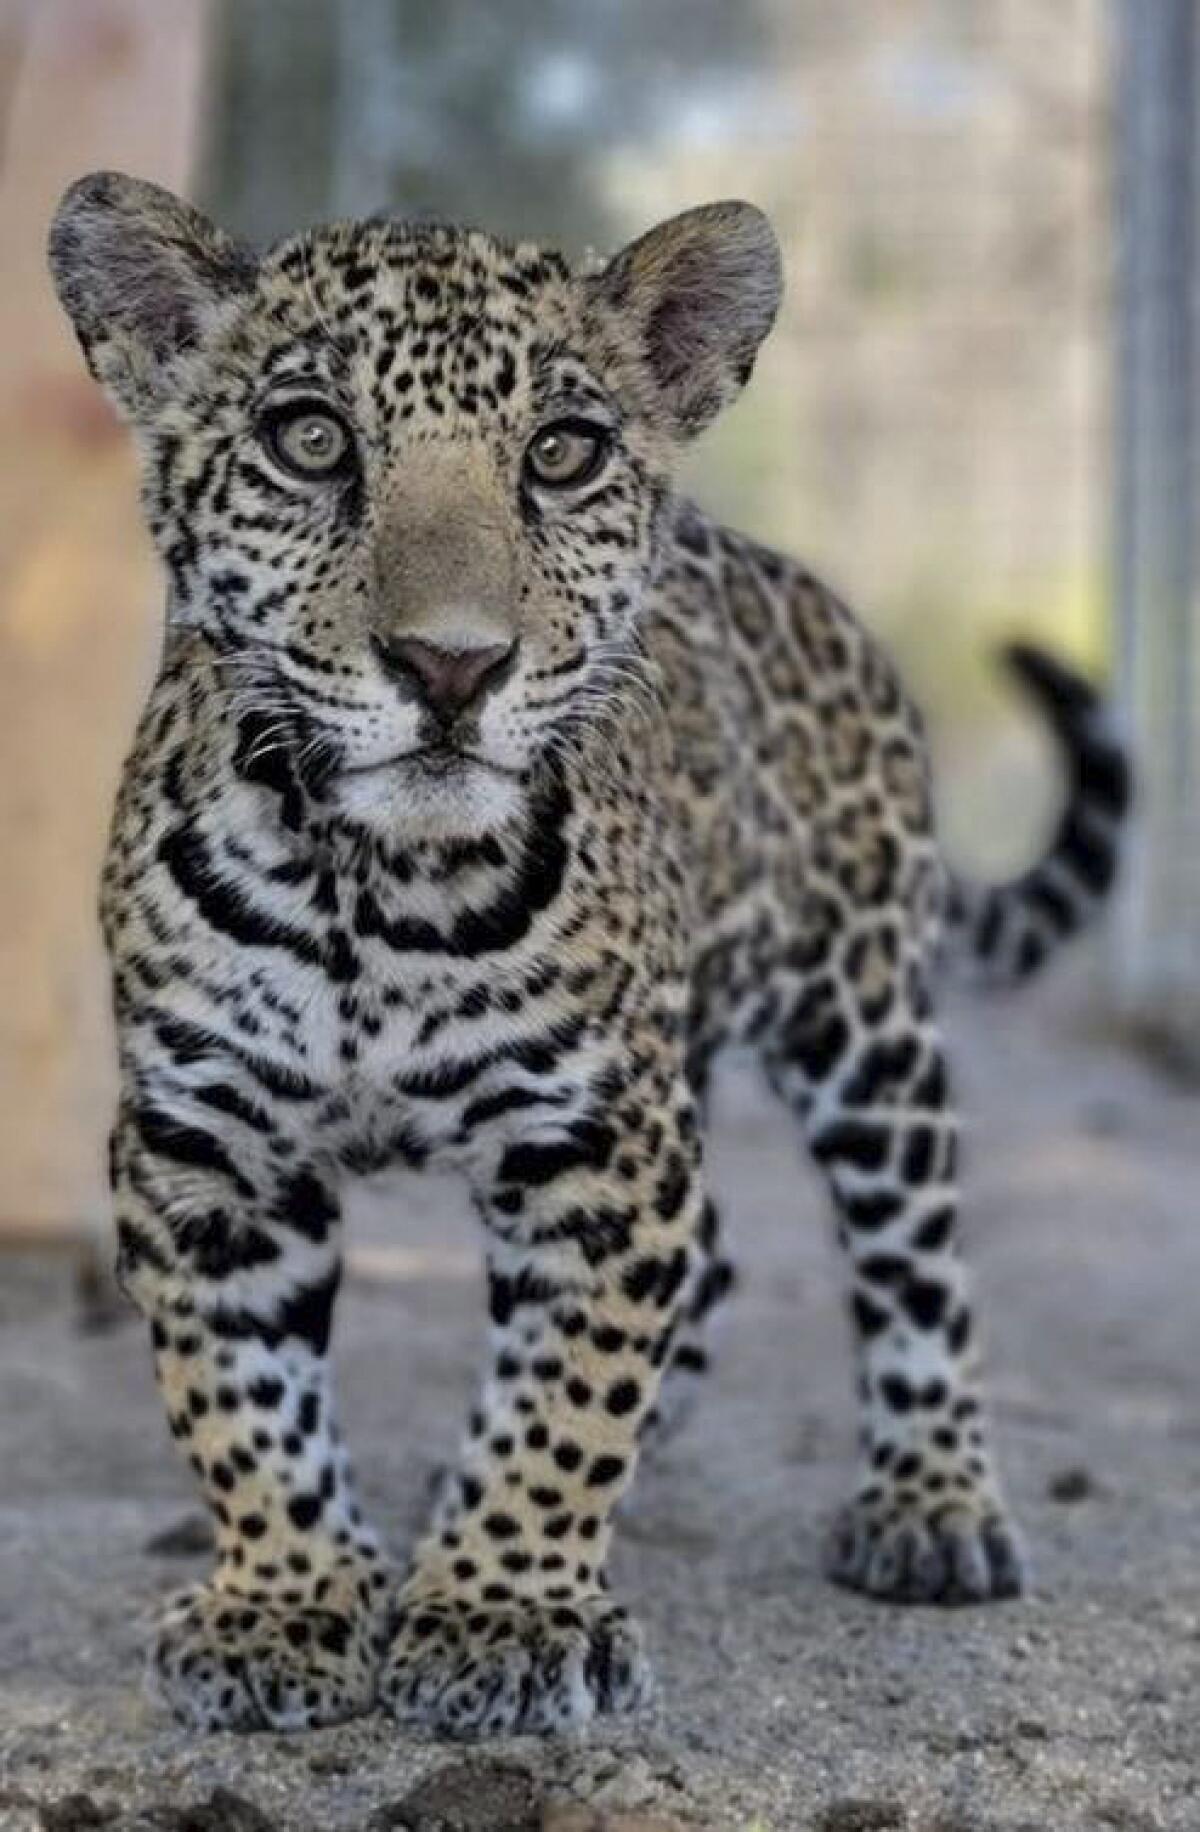 A jaguar cub stands in dirt